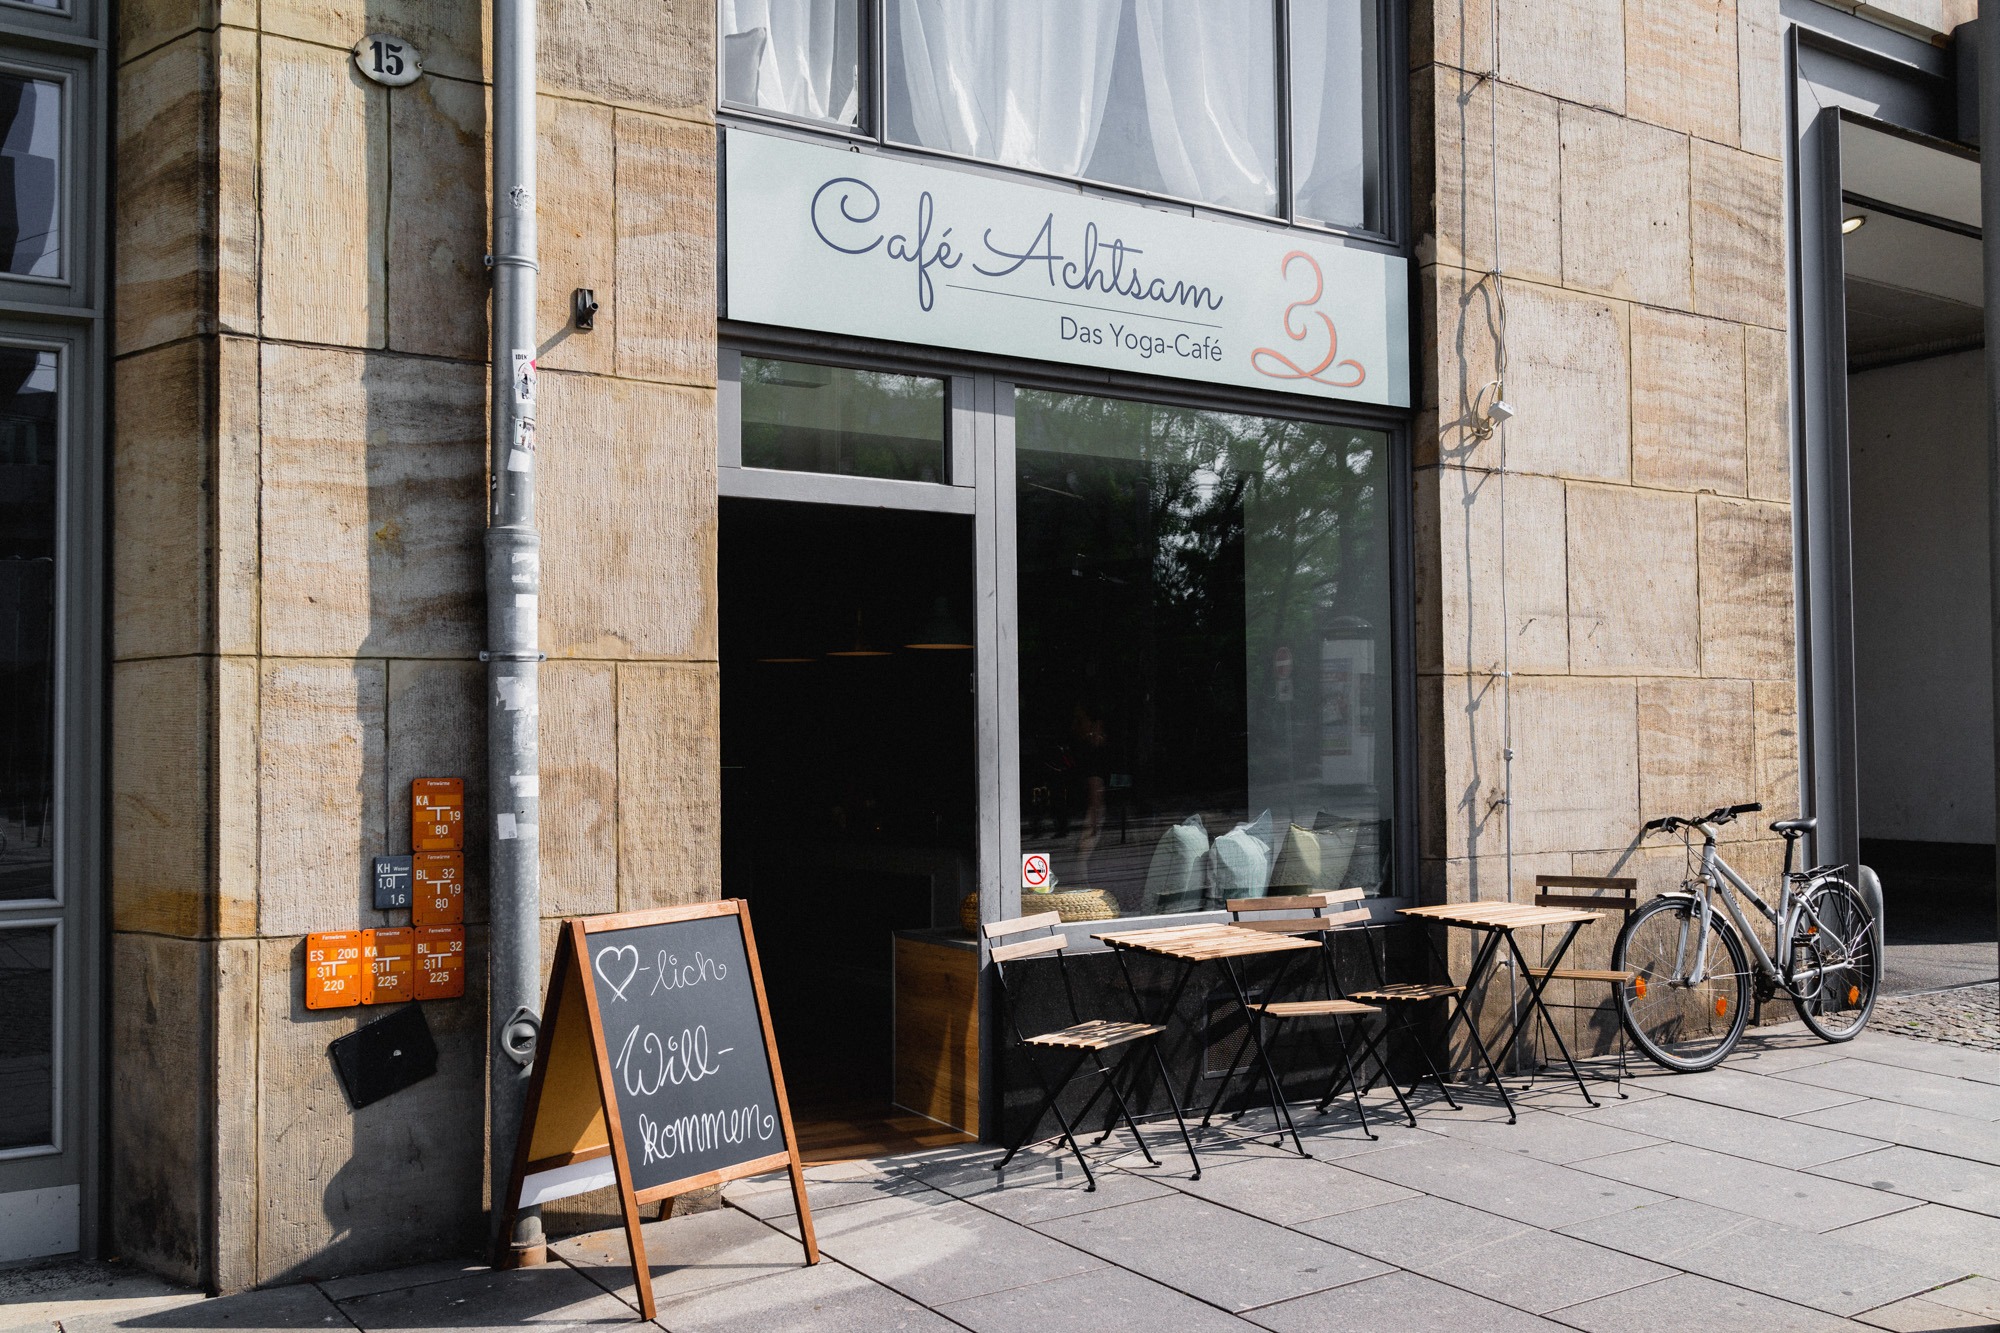 Café Achtsam - Das Yoga-Café, Wallstraße 15 in Dresden